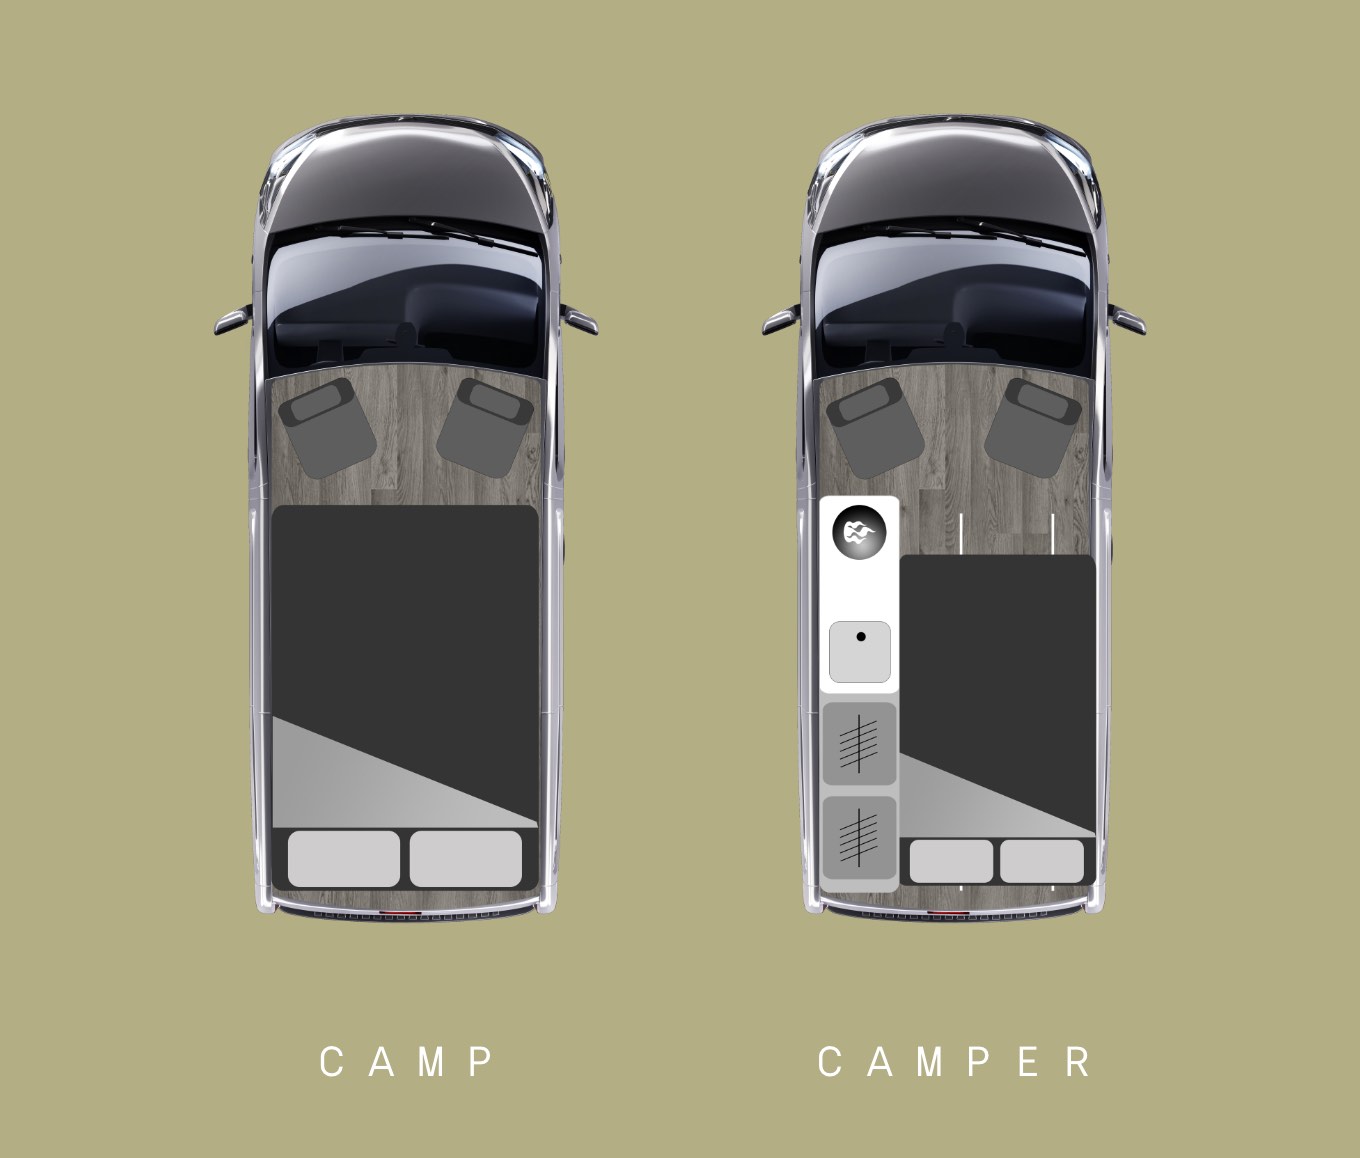 Camp & Camper